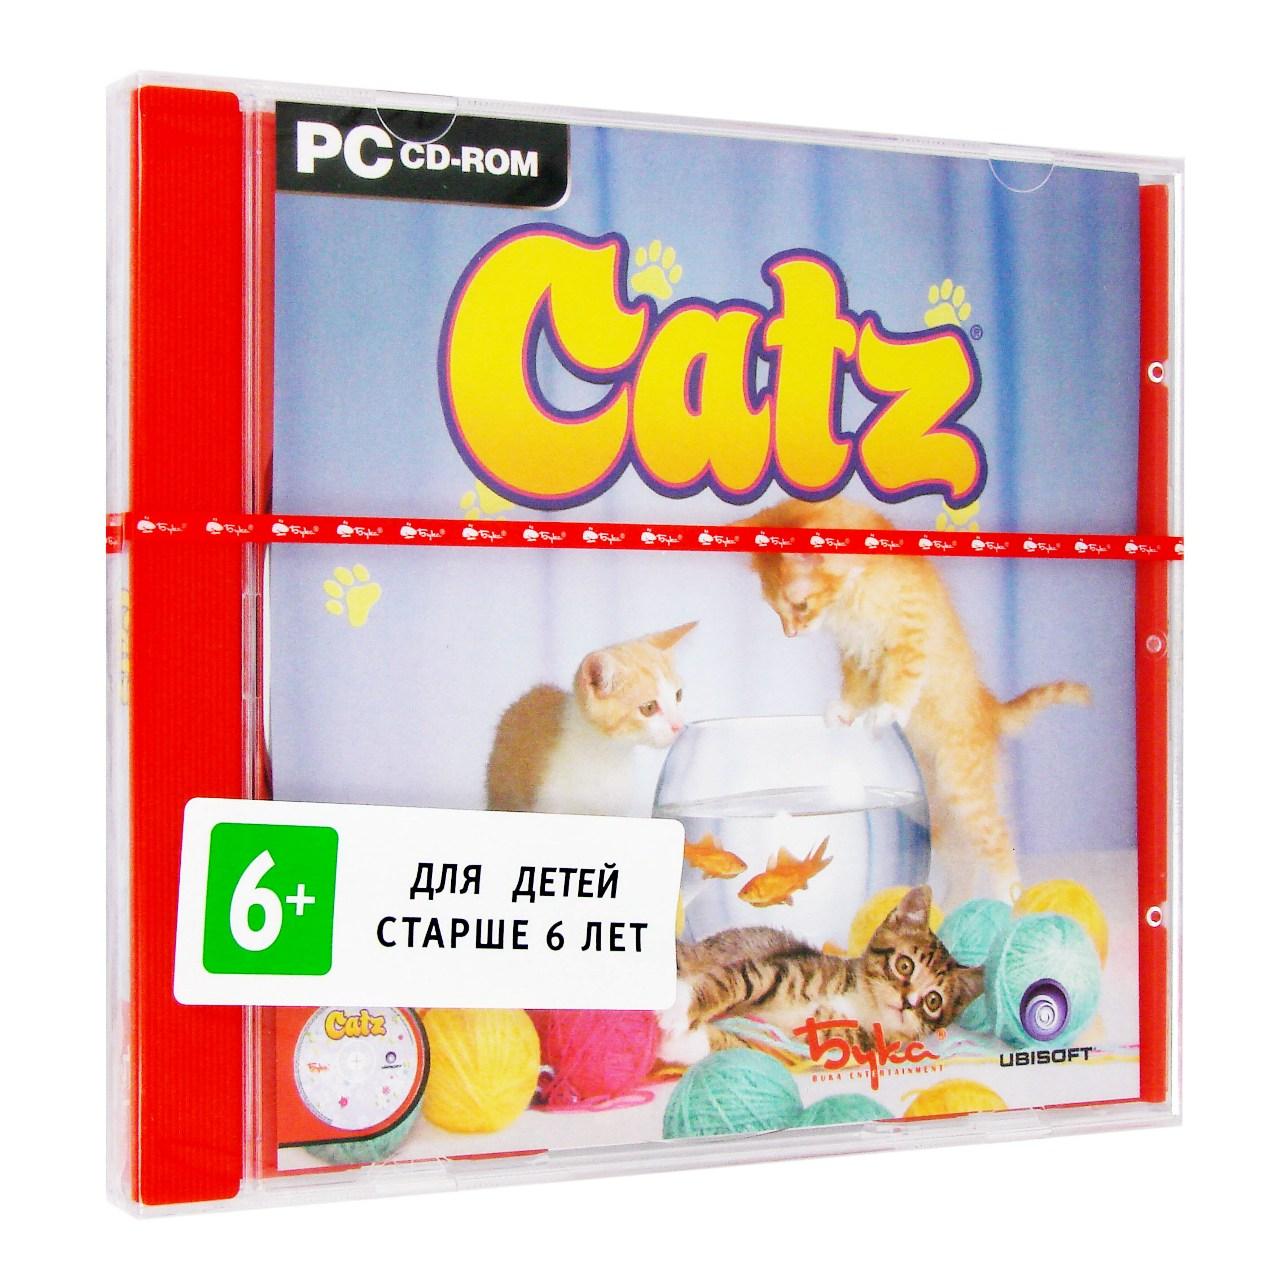  - Catz 6 (PC),  "", 1CD